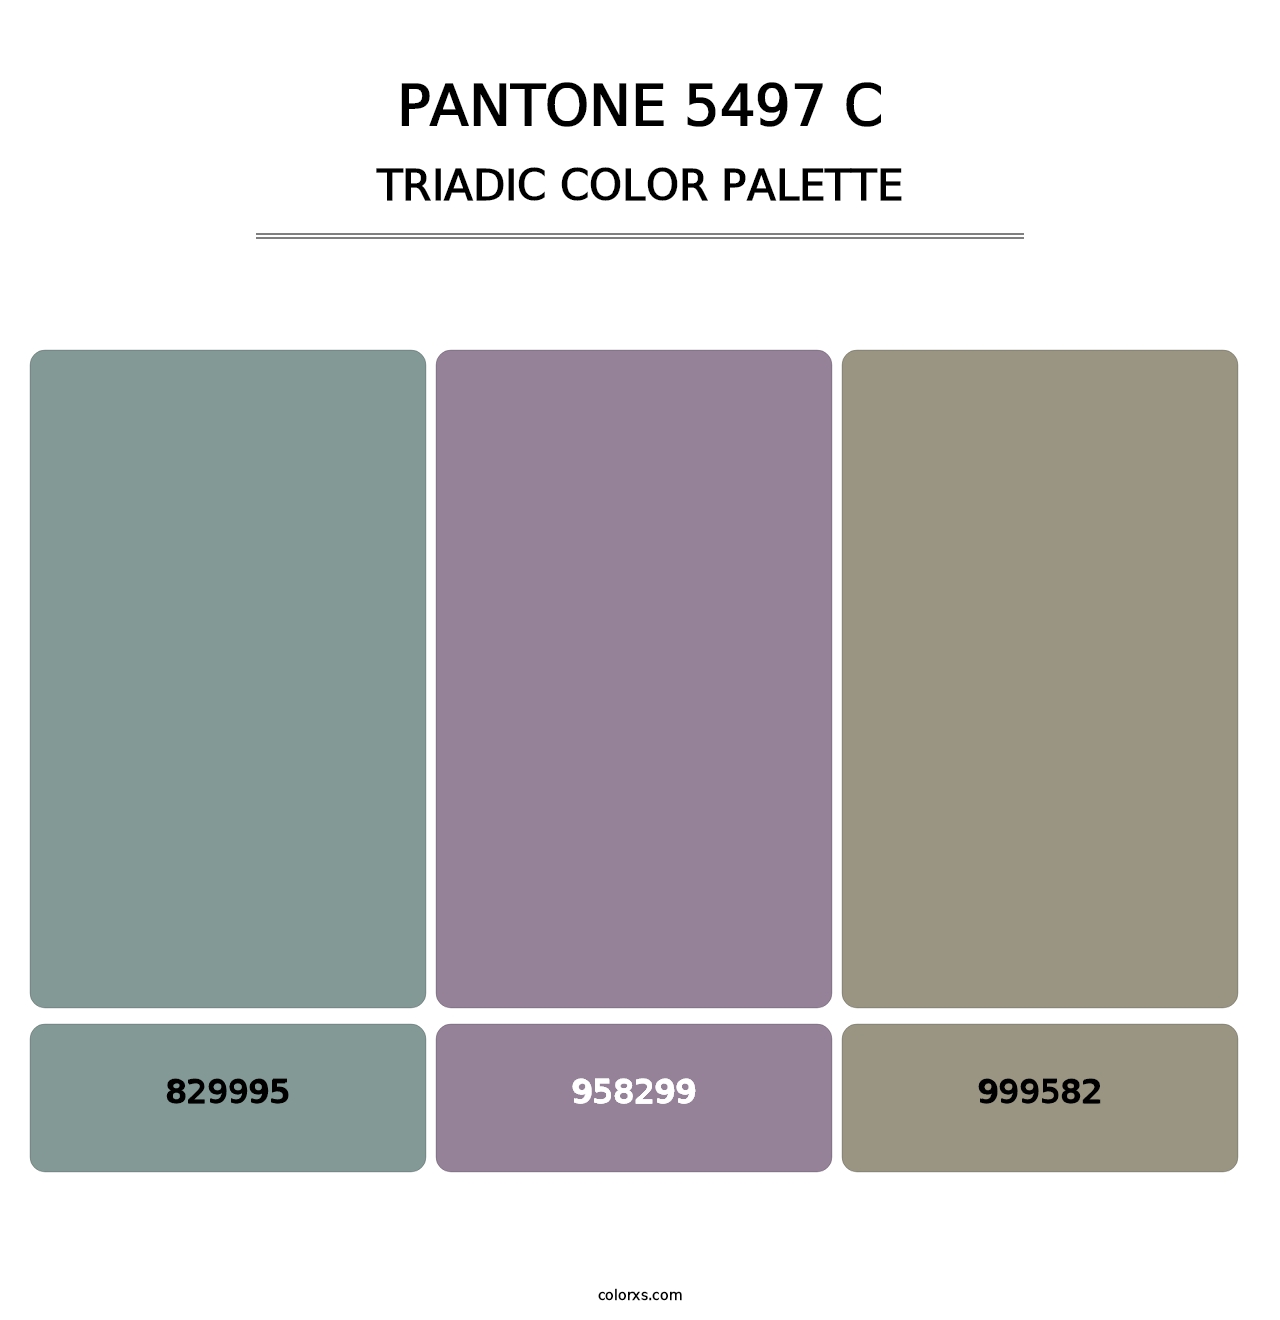 PANTONE 5497 C - Triadic Color Palette